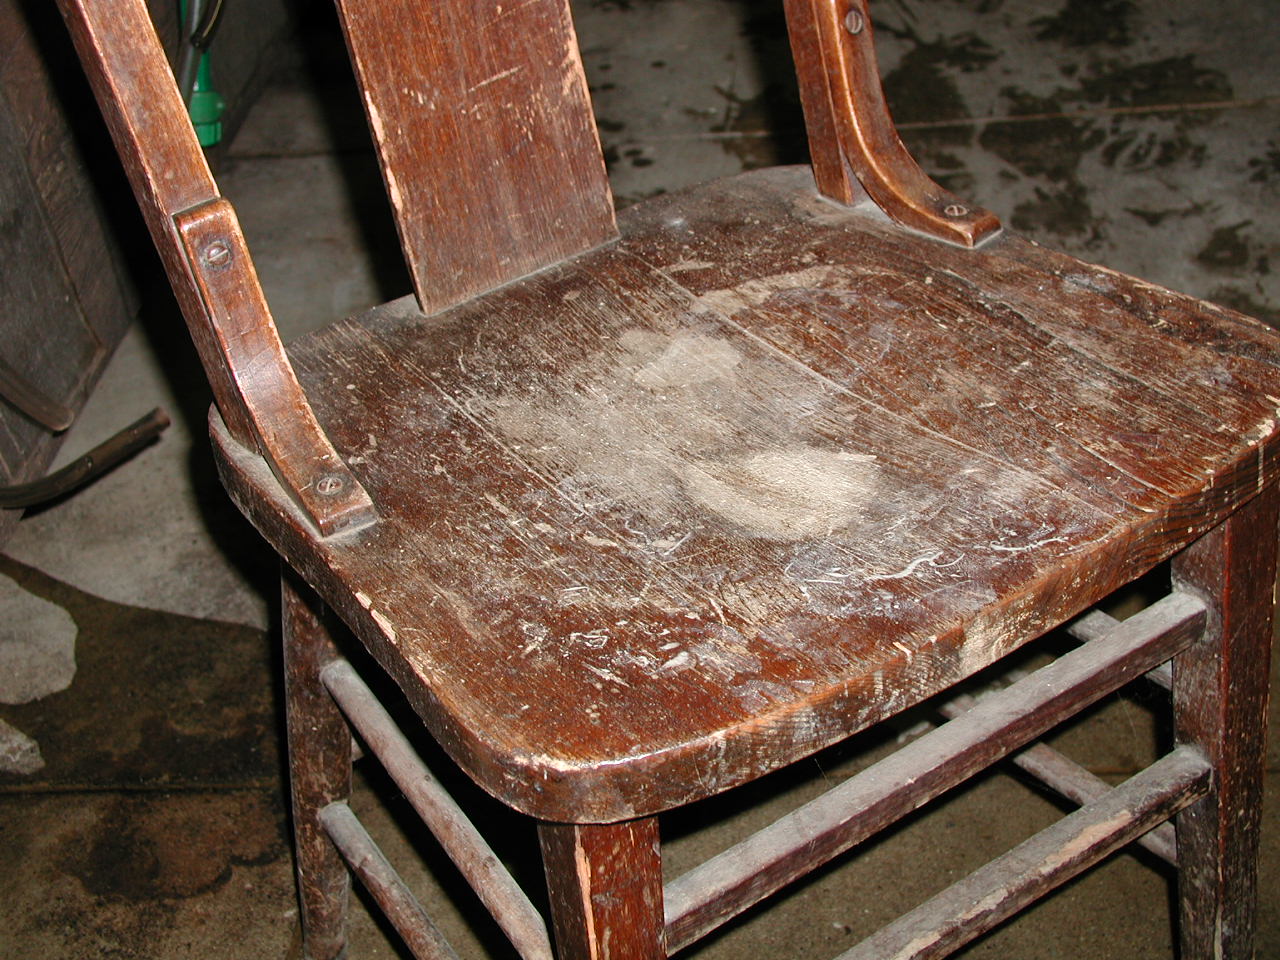 a worn wooden chair on a dark background